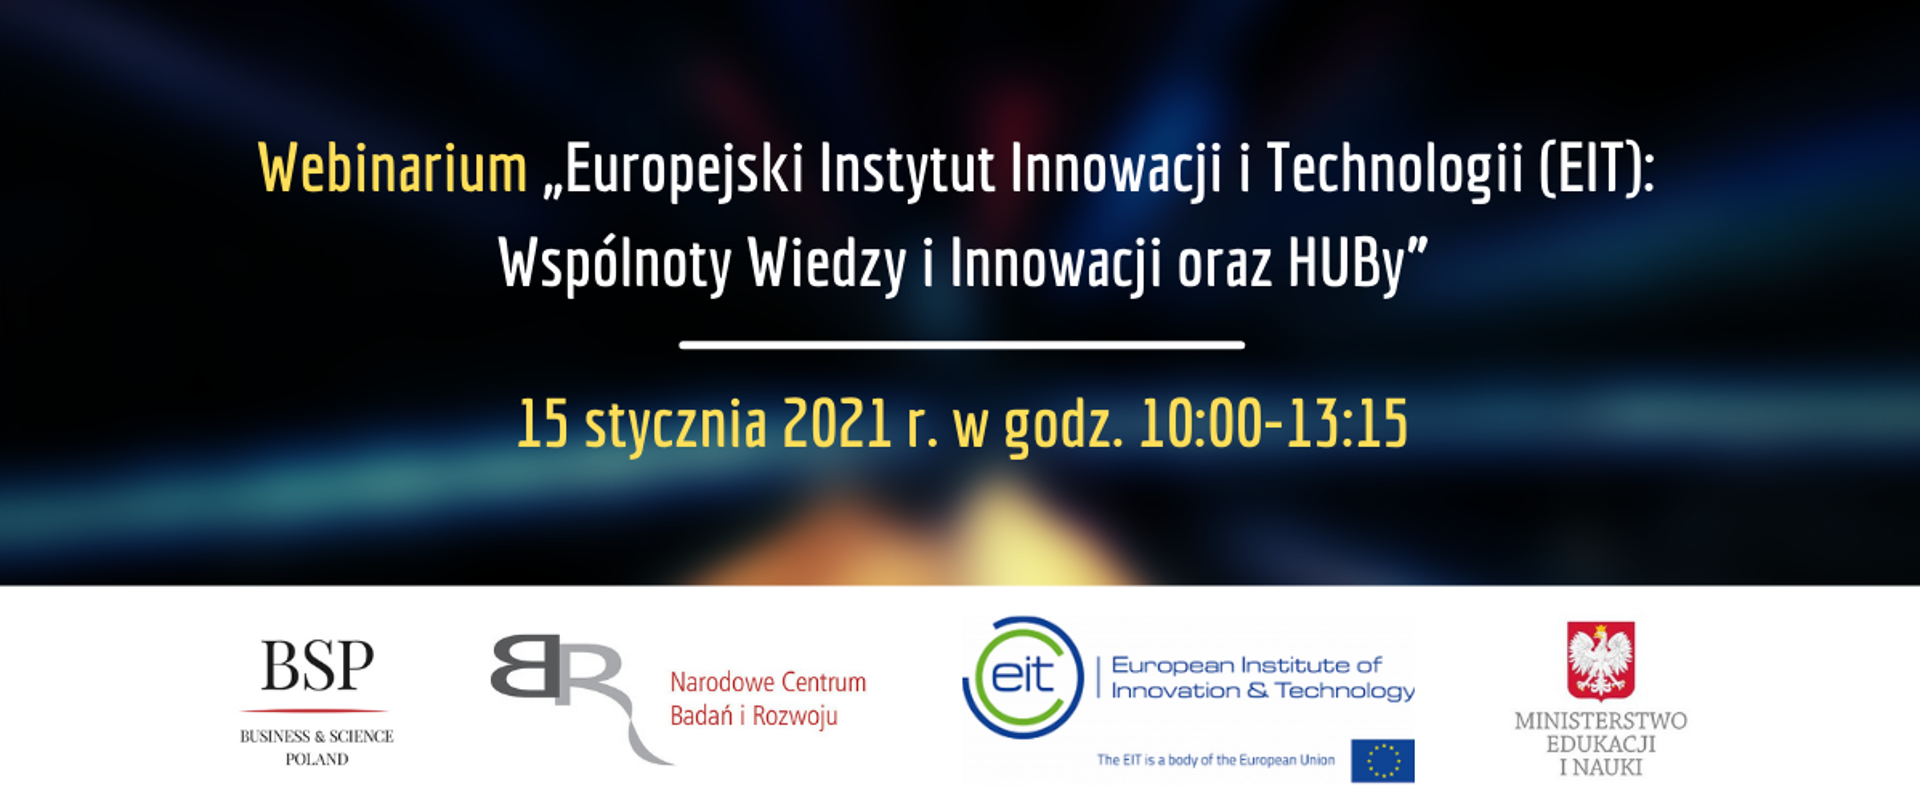 Na ciemnym tle żółto-białe napisy Webinarium "Europejski instytut Innowacji i Technologii (EIT): Wspólnoty Wiedzy i Innowacji oraz HUBy. Poniżej żółtymi literami napis 15 stycznia 2021 r. w godz. 10:00 - 13:15